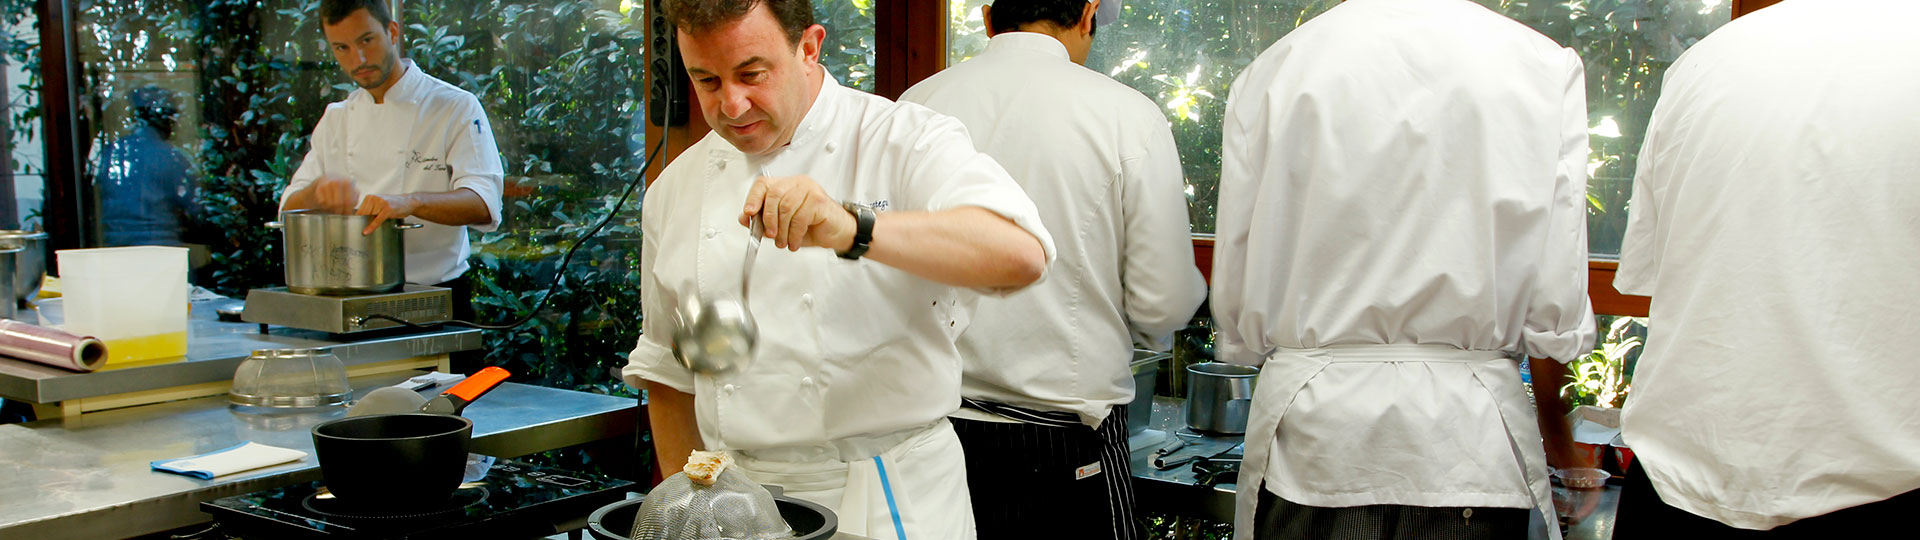 Le chef espagnol Martín Berasategui en train de cuisiner